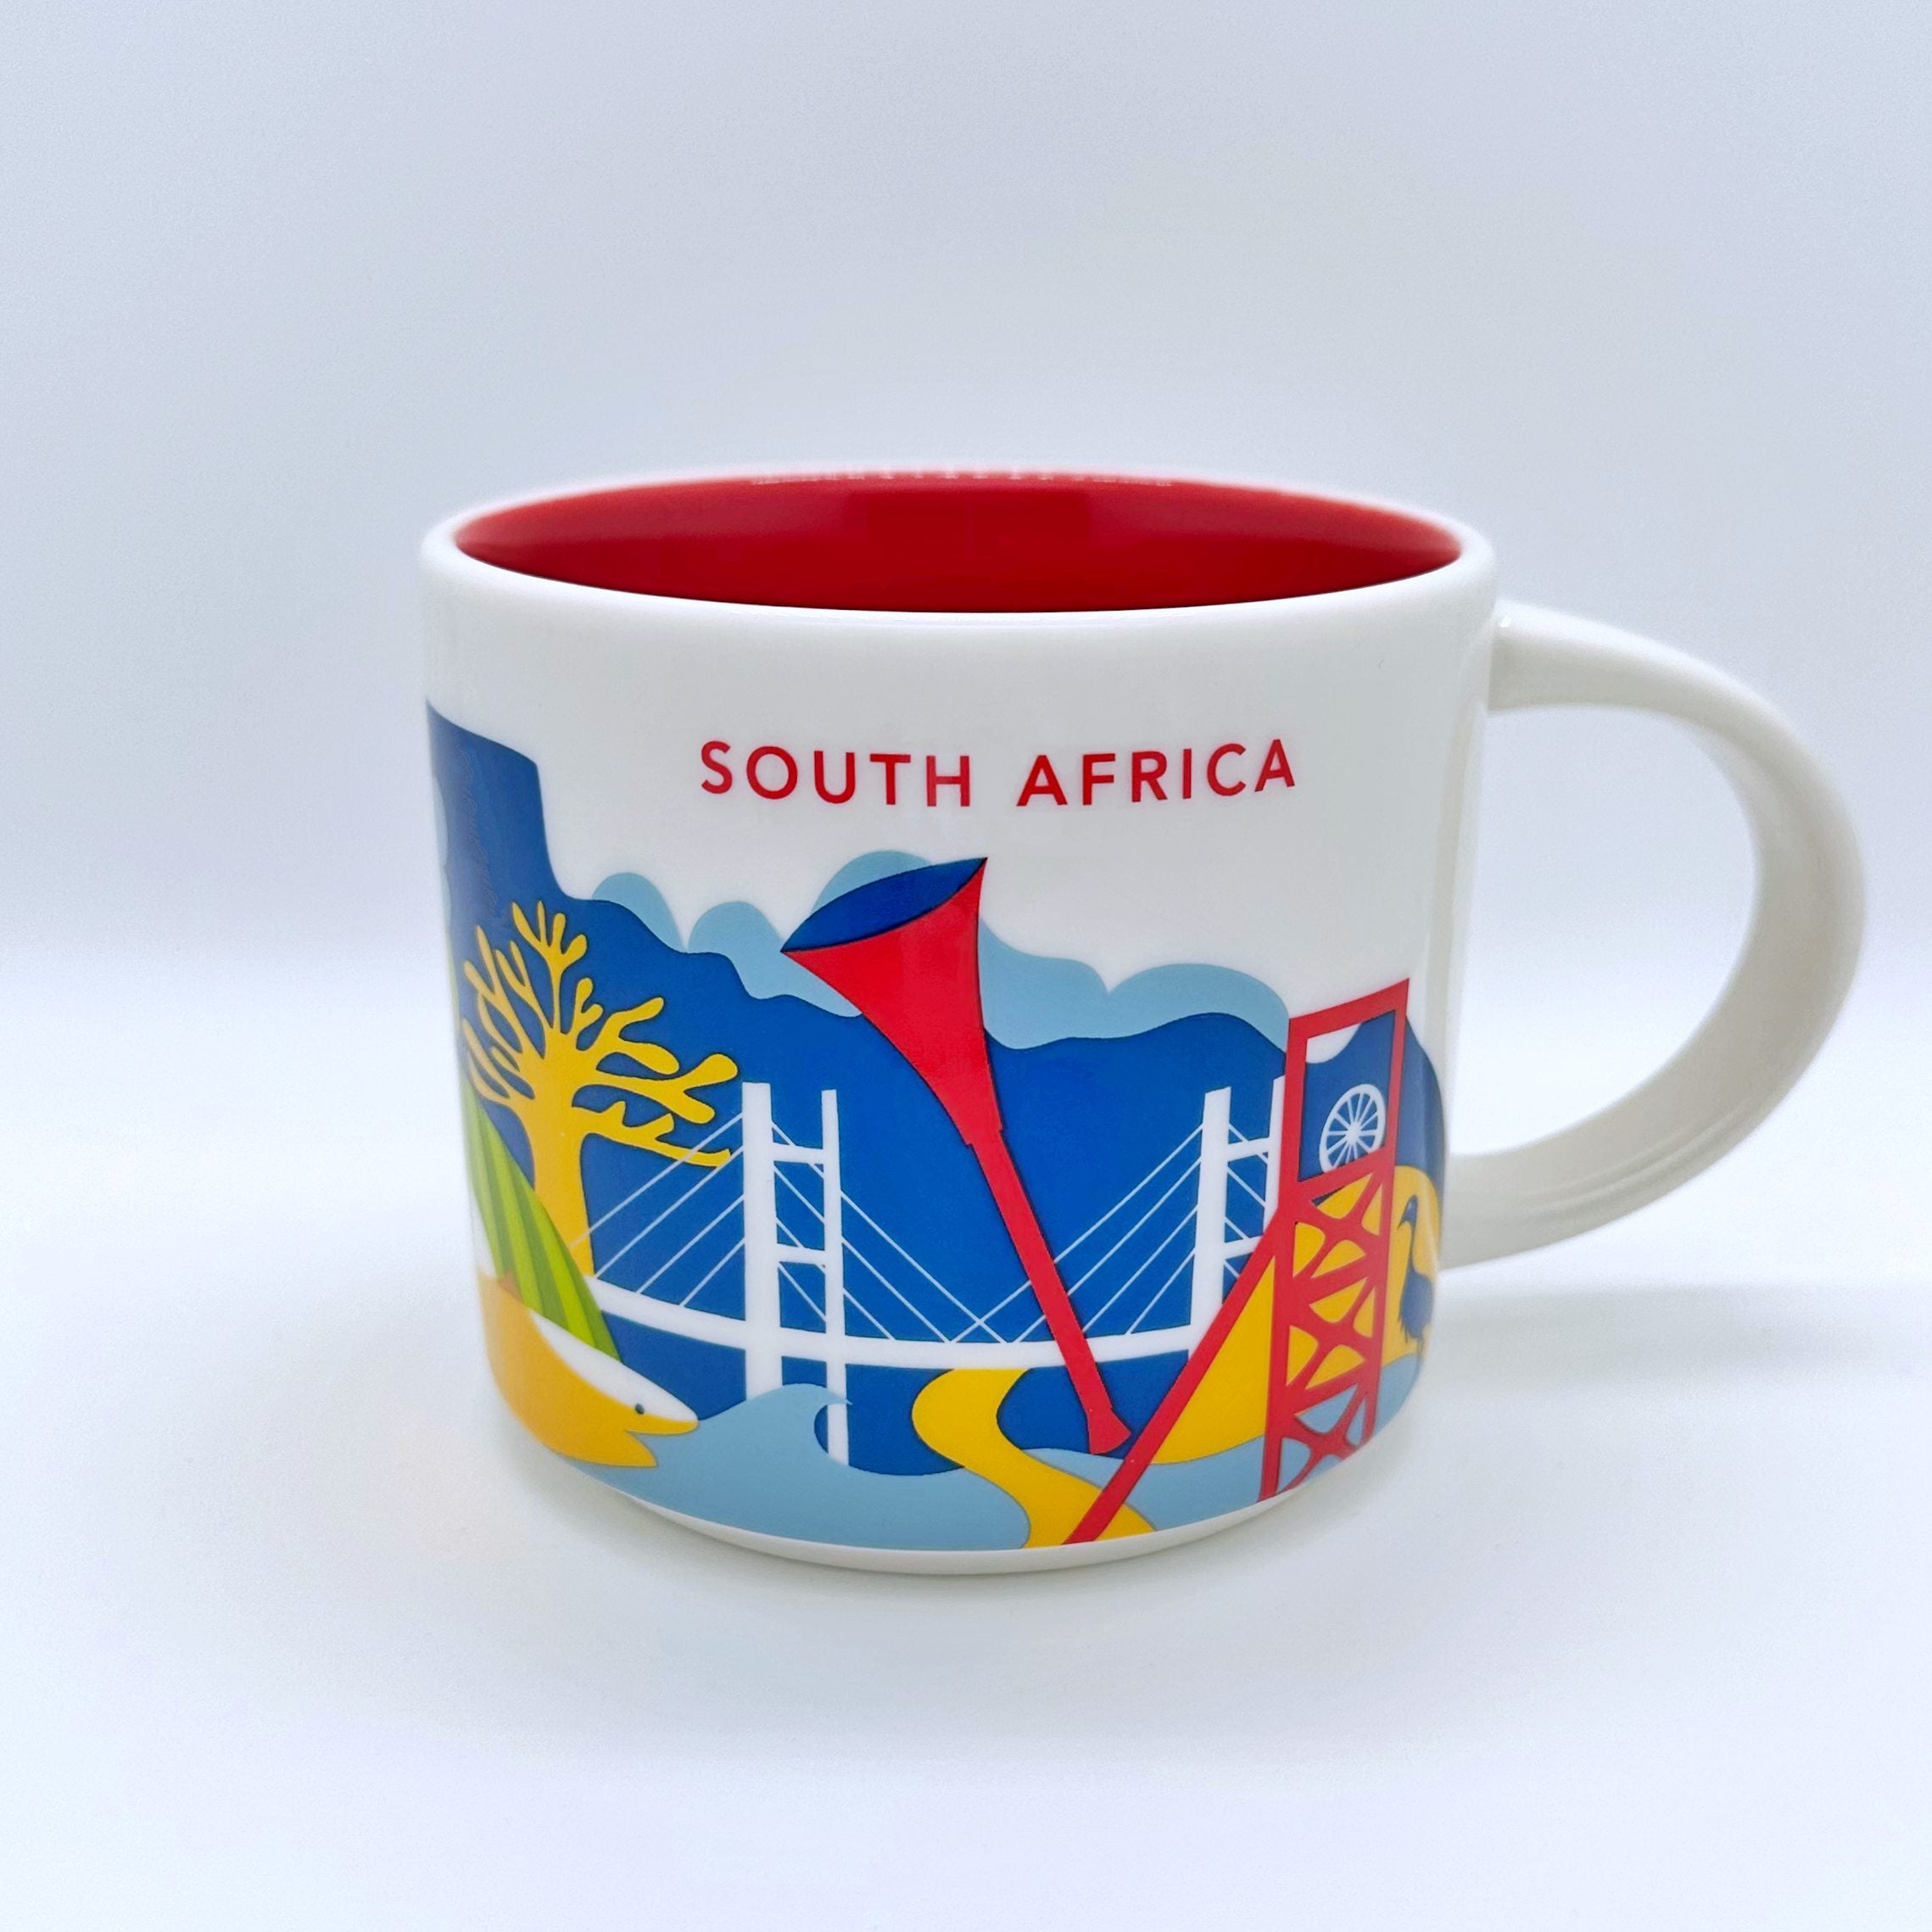 Kaffee Cappuccino oder Tee Tasse von Starbucks mit gemalten Bildern aus dem Land Südafrika